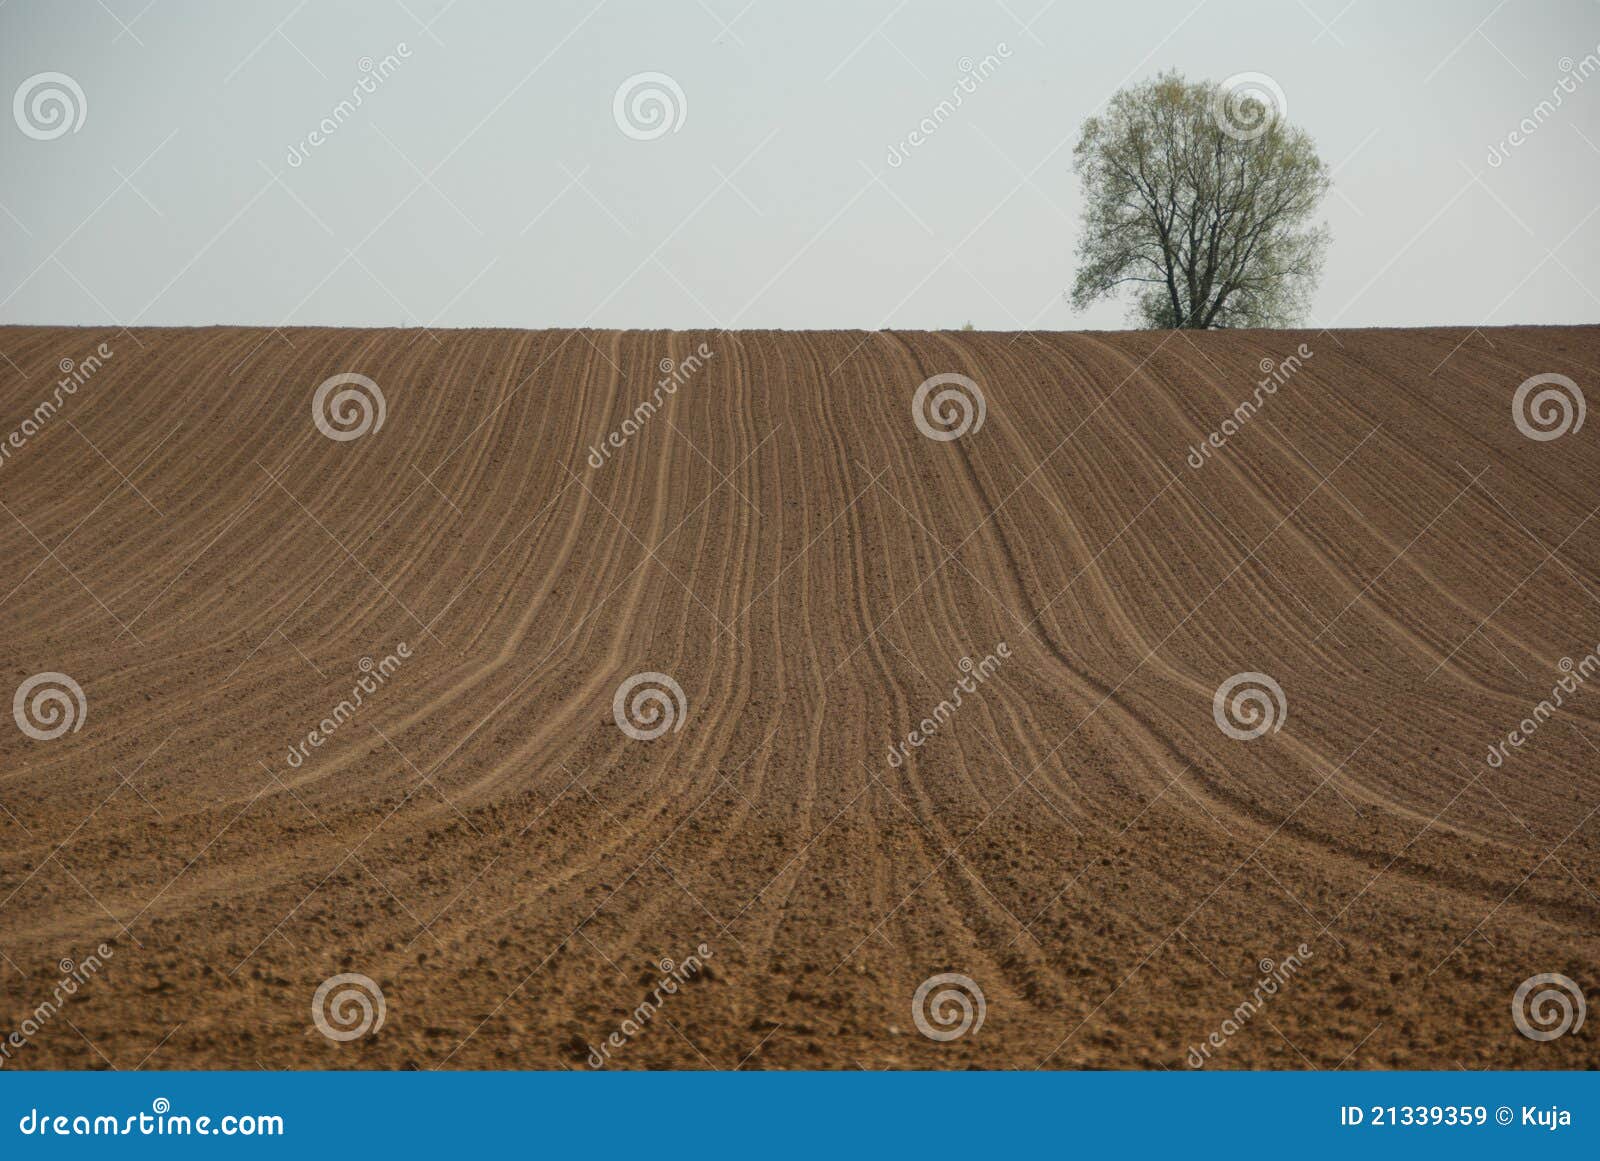 Вспахали 5 7 поля найдите. Вспаханные склоны почвы. Вспаханное поле. Покажи Вспаханное поле.